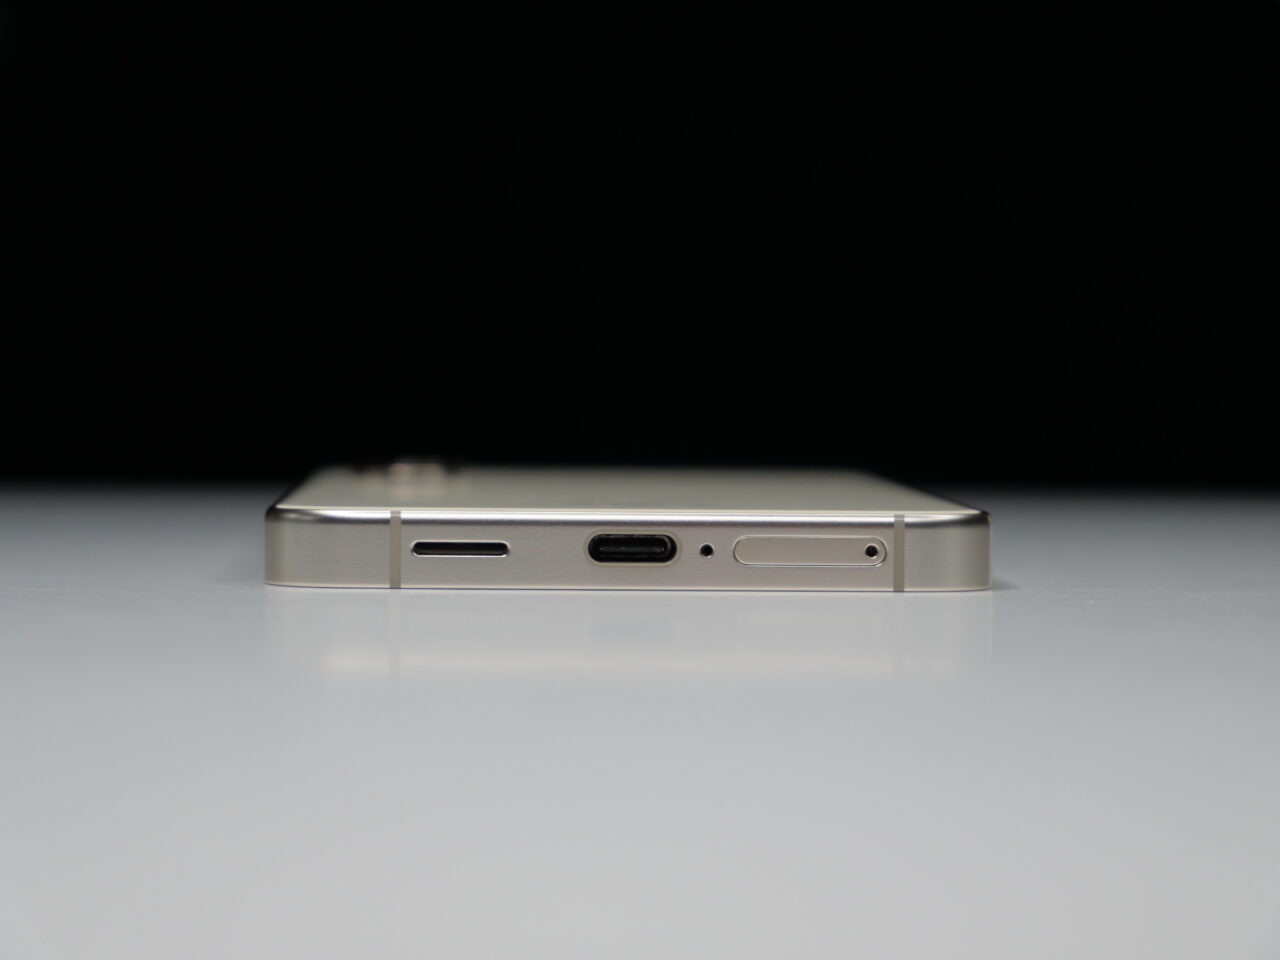 Smartfon w poziomym ustawieniu z widocznym bocznym przyciskiem i portami, umieszczony na białej powierzchni na tle czarnego tła.